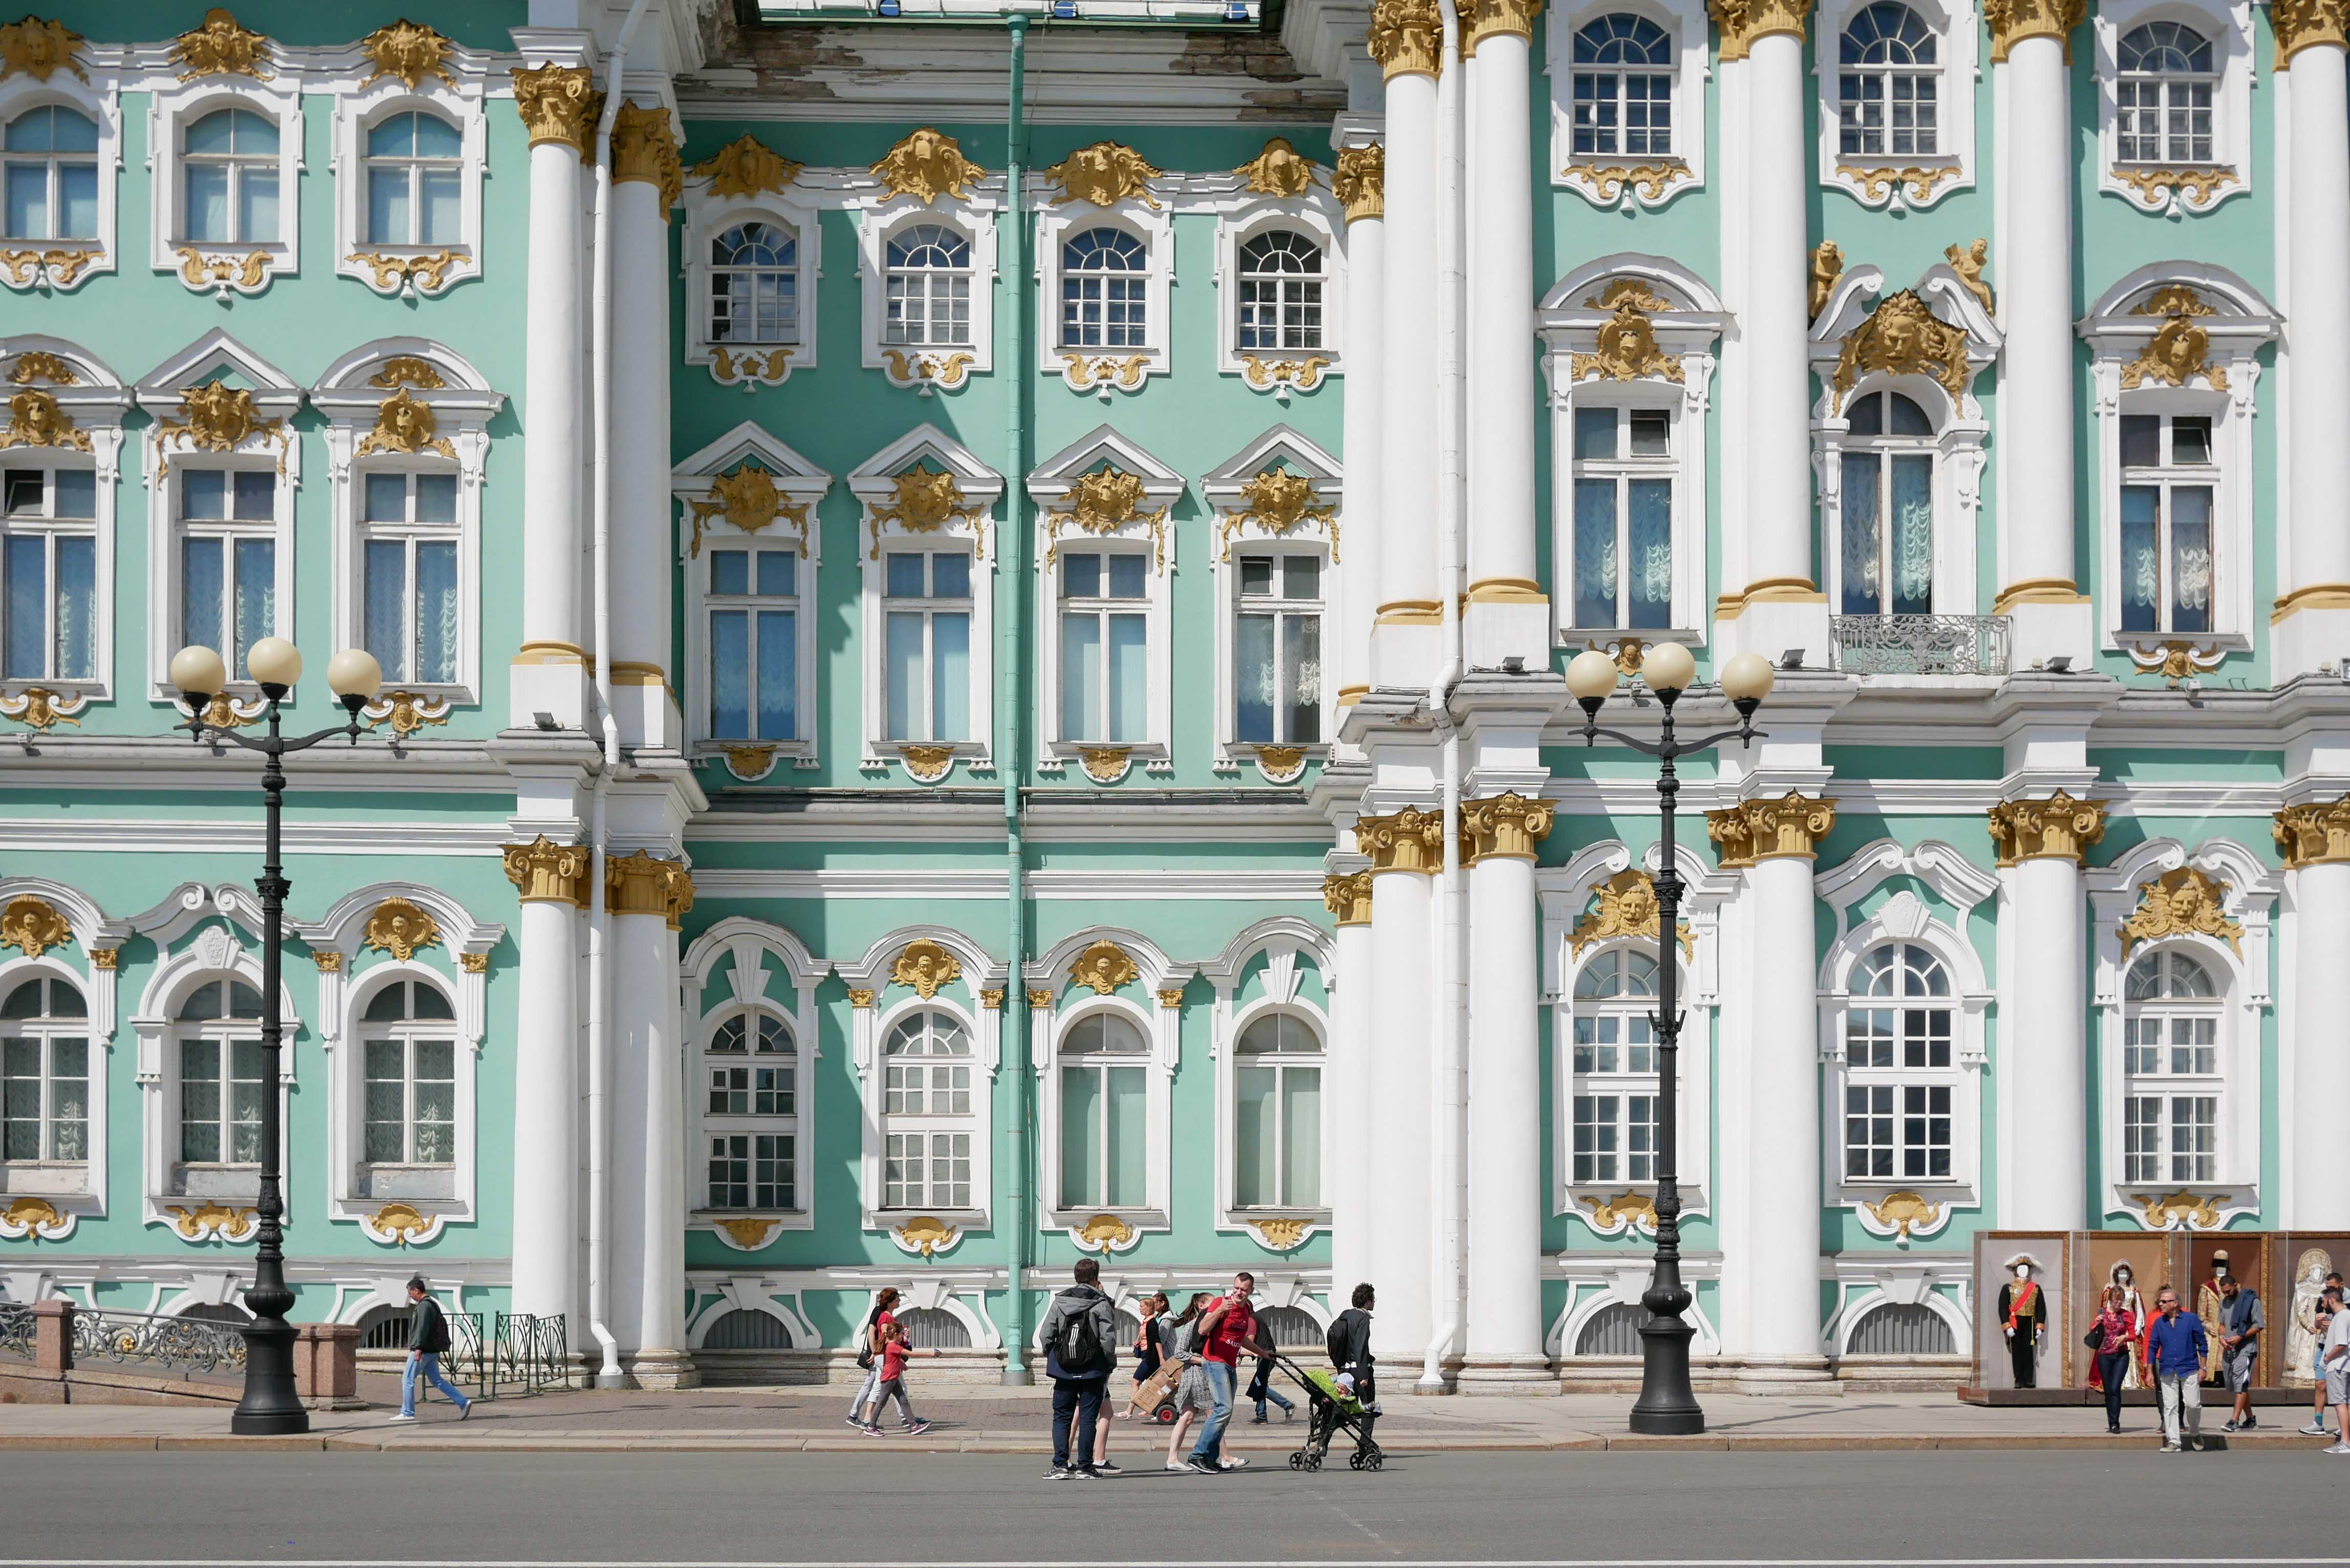 Masterpieces of MOSCOW รัสเซีย สวย หรู ราคาไม่แรงและต้องไม่ใช้วีซ่า!